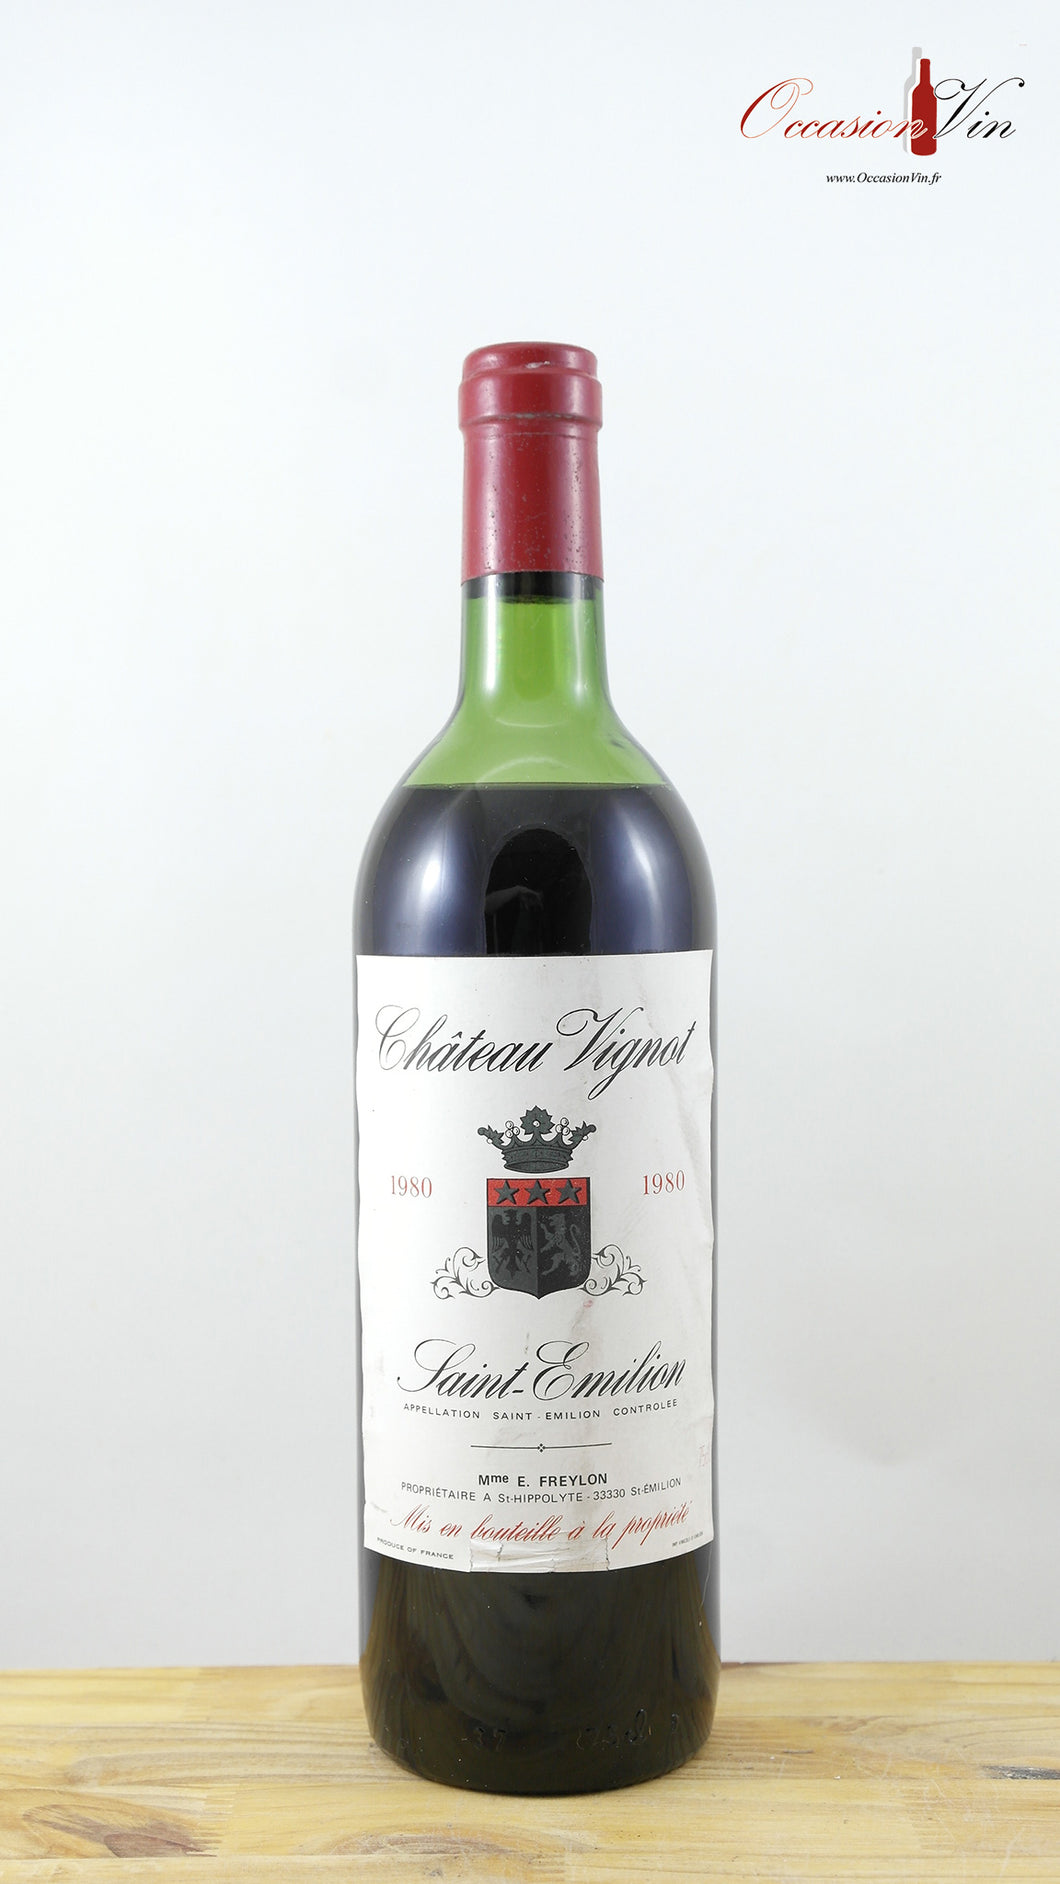 Château Vignot Vin 1980